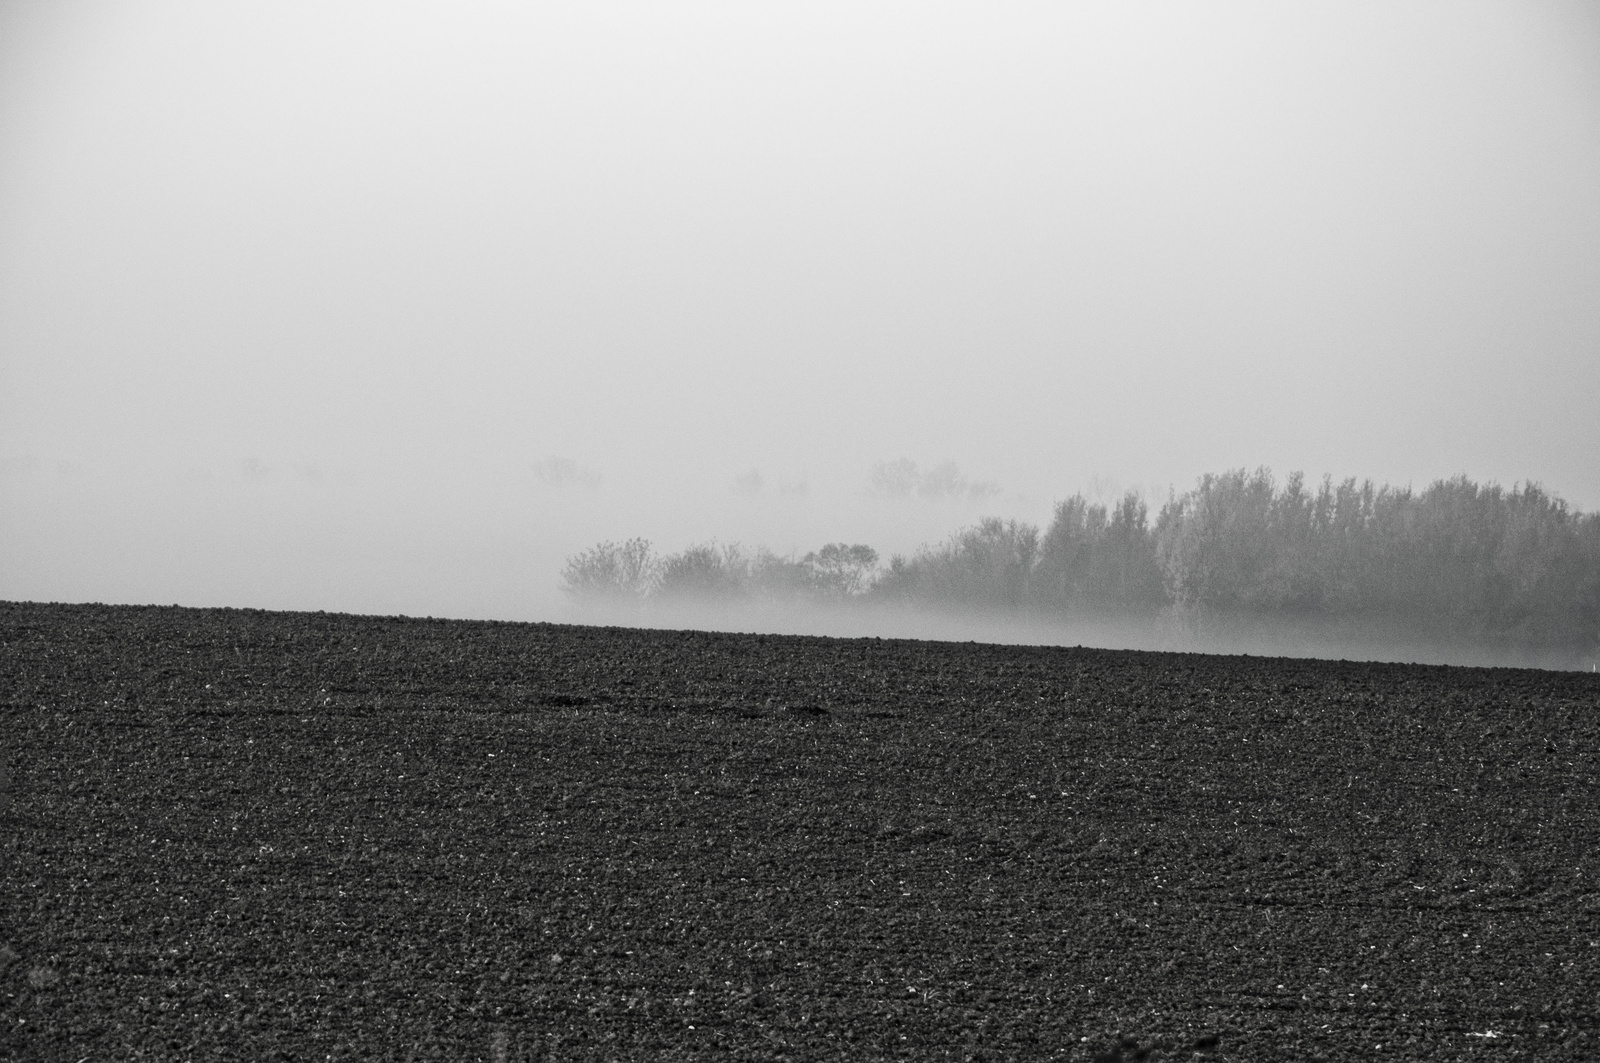 reggeli köd a határban